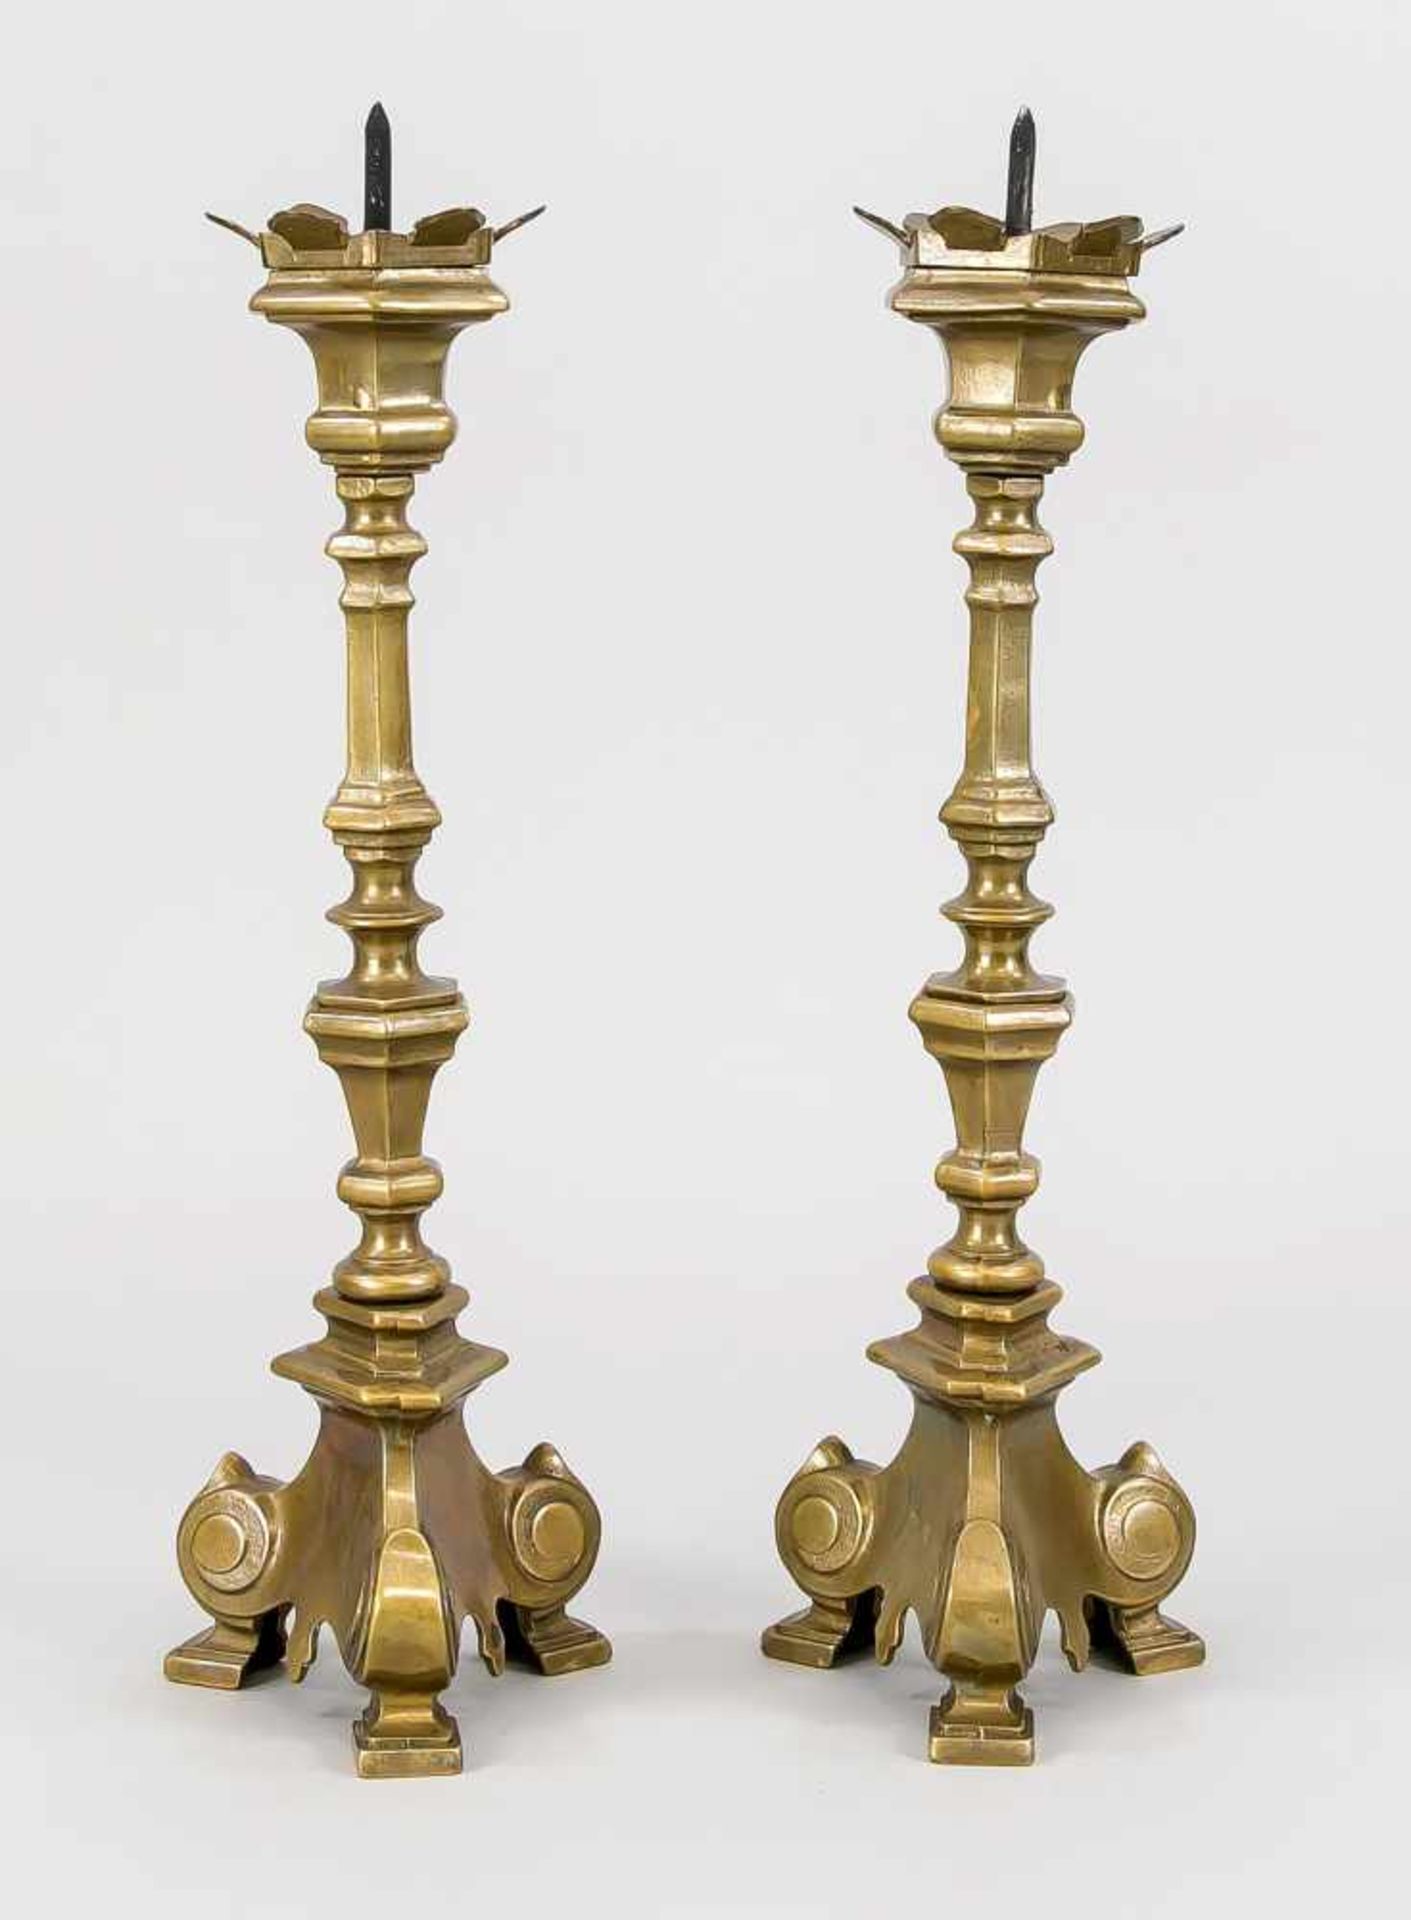 Paar Leuchter, Ende 19. Jh., Bronze. Dreiüassiger Sockel auf 3 Füßen. Hexadonaler